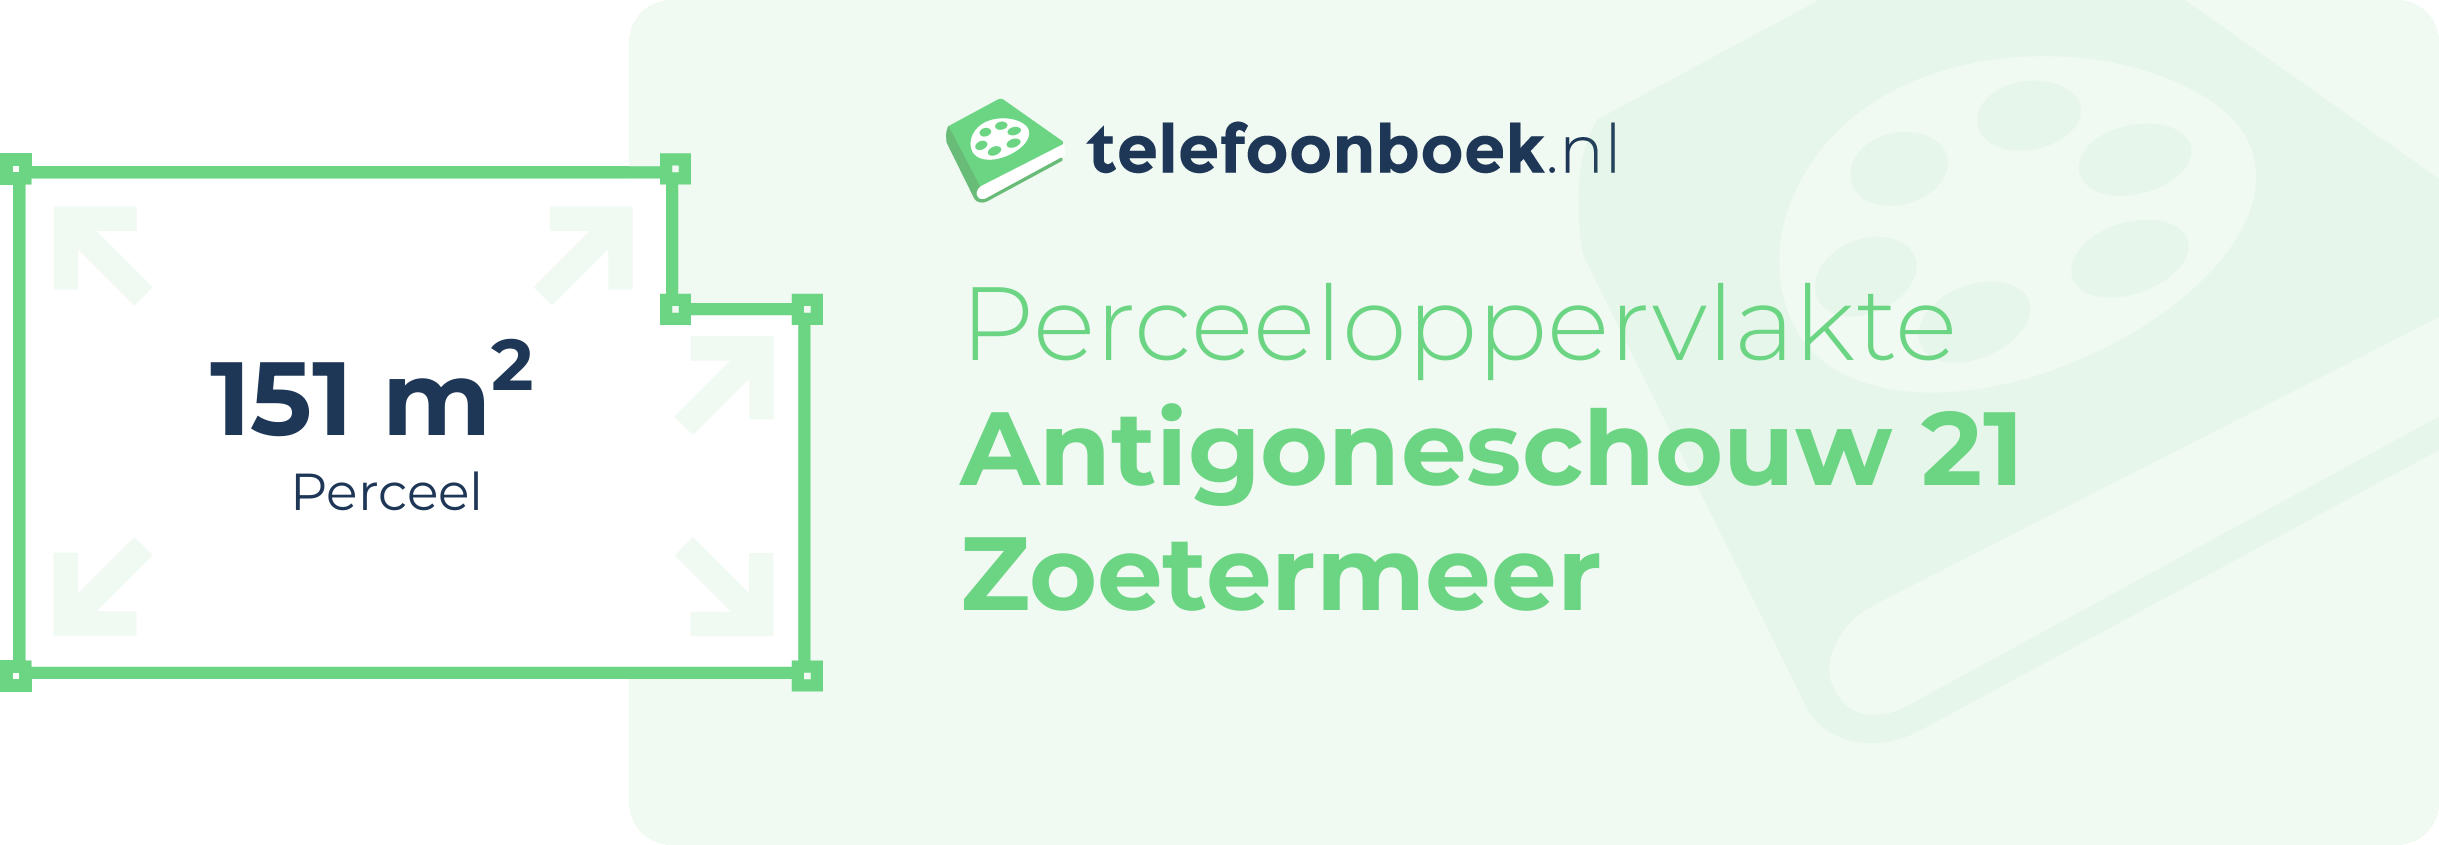 Perceeloppervlakte Antigoneschouw 21 Zoetermeer